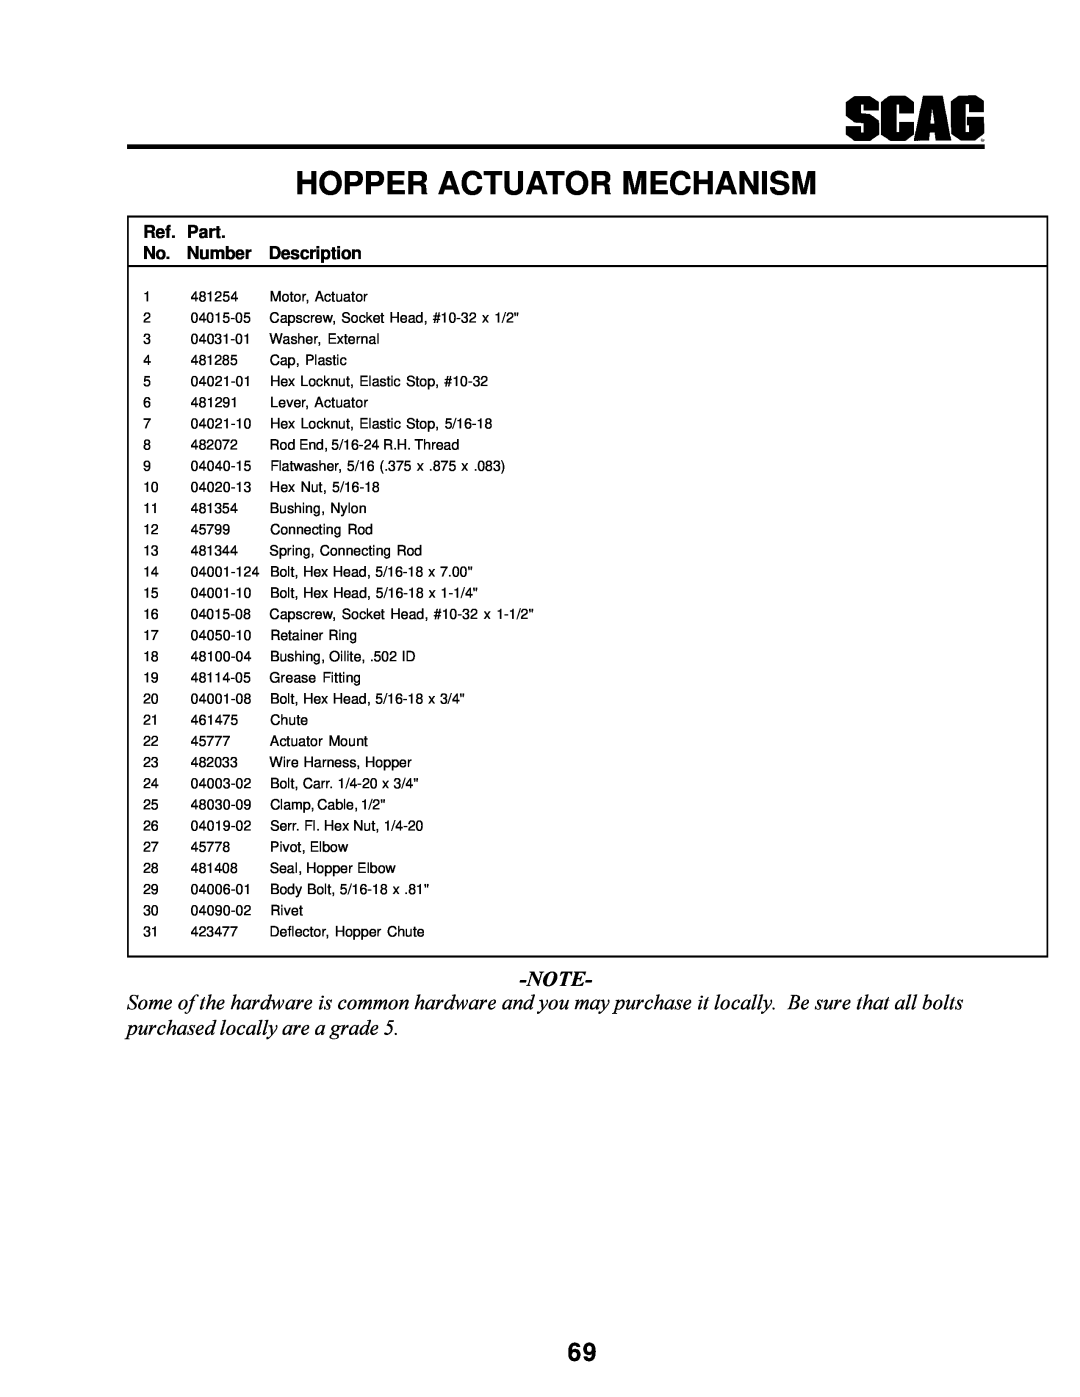 MB QUART SCR manual Hopper Actuator Mechanism, Ref. Part No. Number Description, 1 481254 Motor, Actuator 